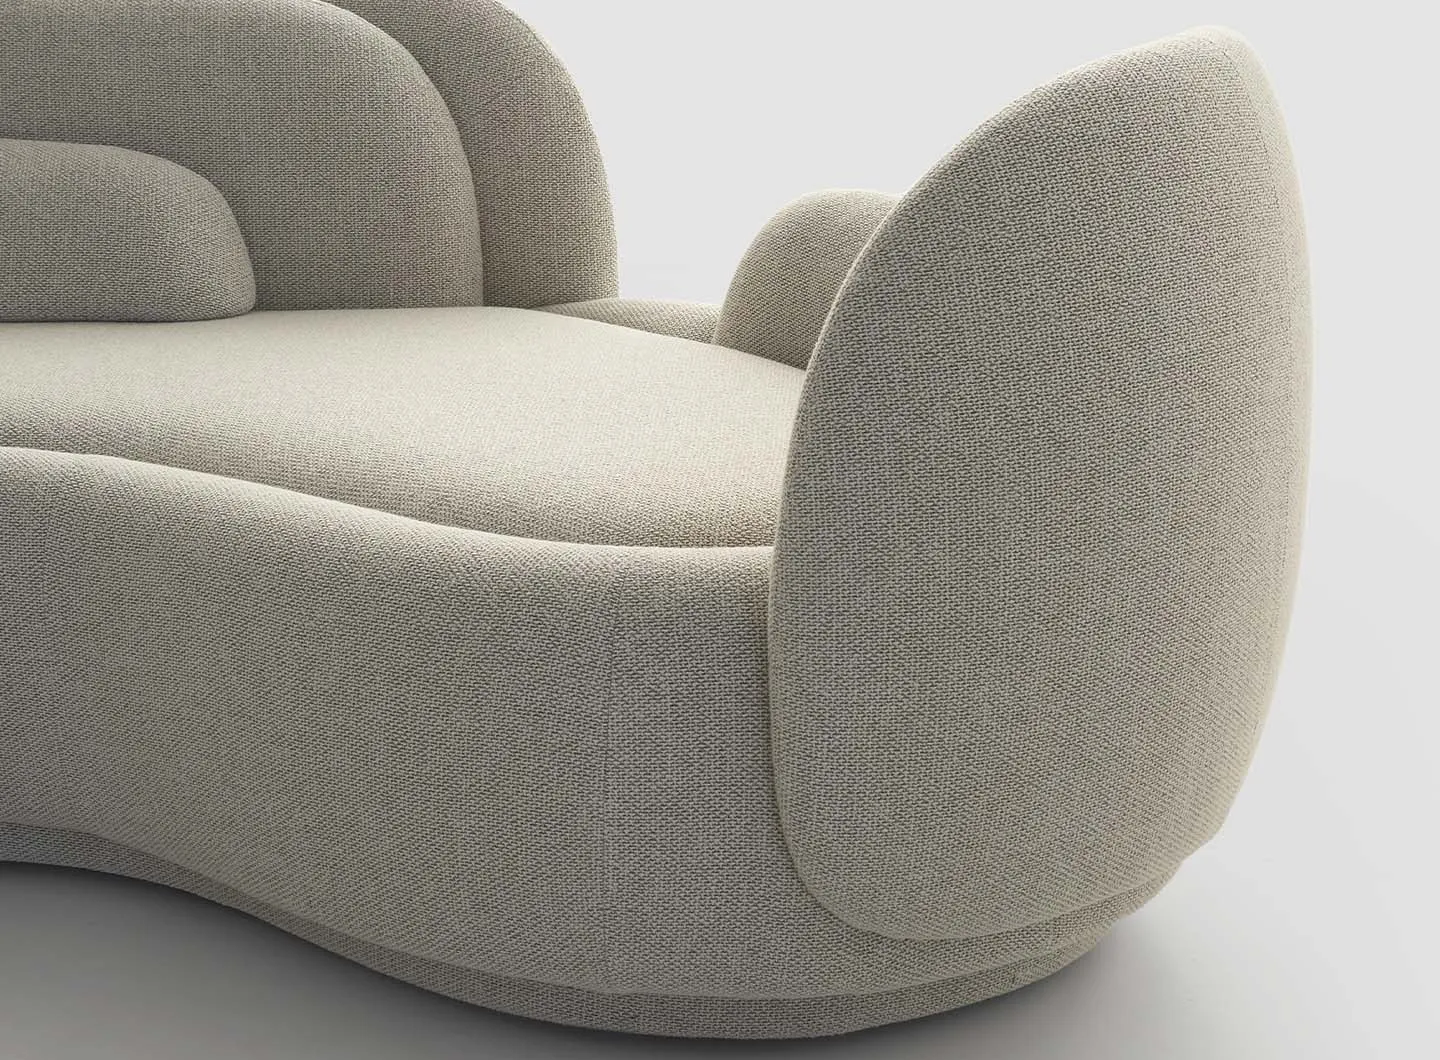 Dettaglio divano Peonia design Cristina Celestino per Pianca